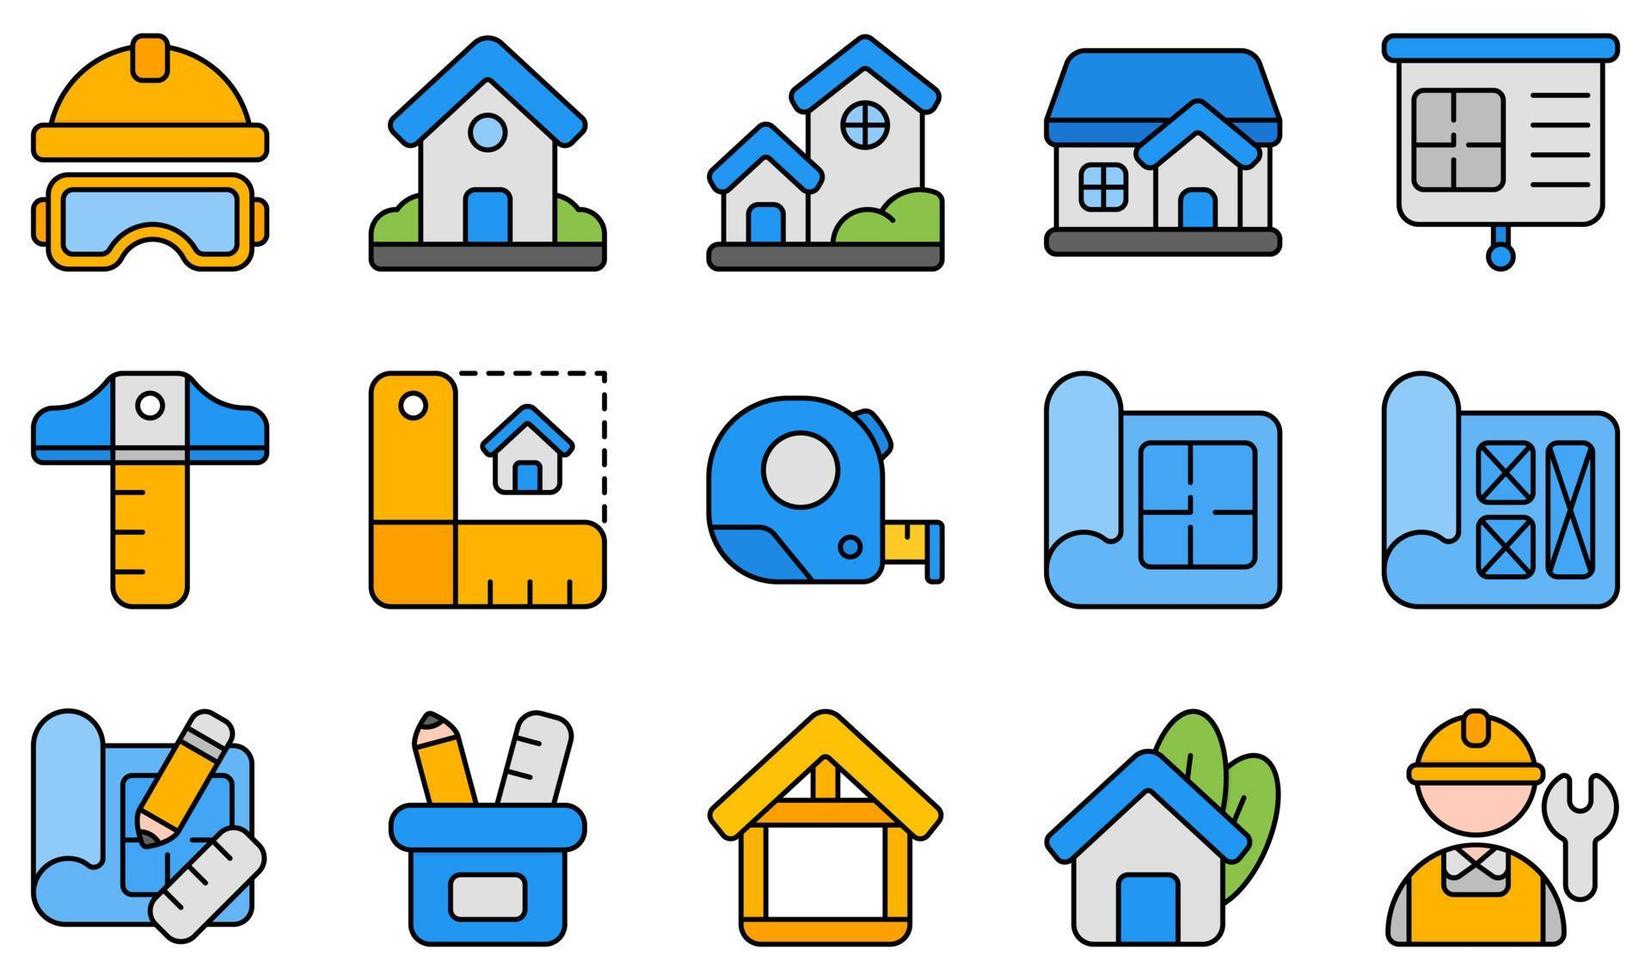 uppsättning vektor ikoner relaterade till arkitektur. innehåller sådana ikoner som hjälm, hus, husplan, mått, prototyp, arbetare och mer.